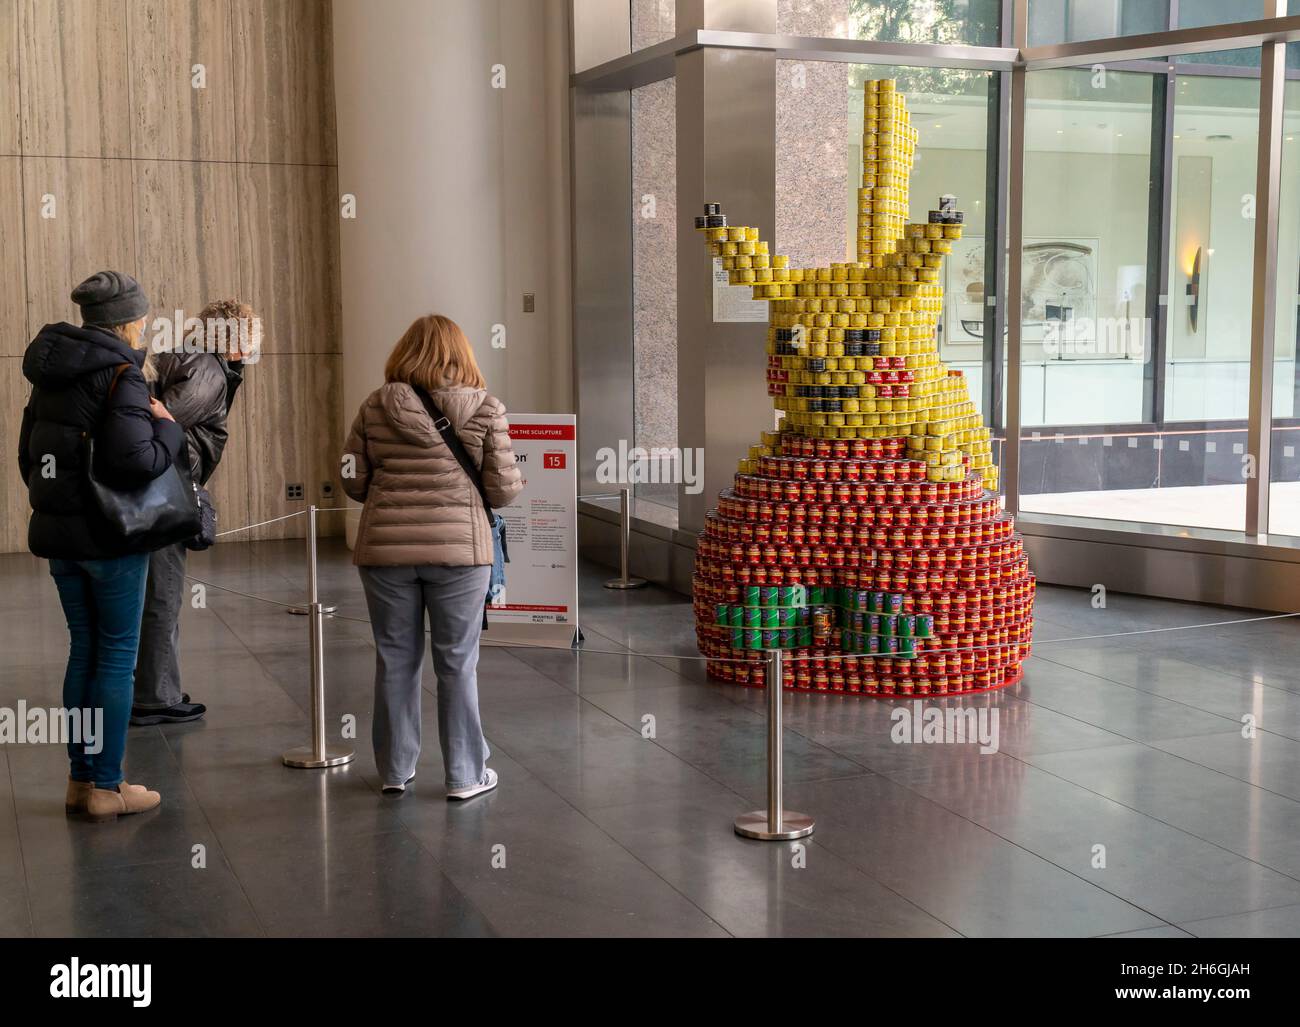 Pikachu na praça fotografia editorial. Imagem de grande - 172728827